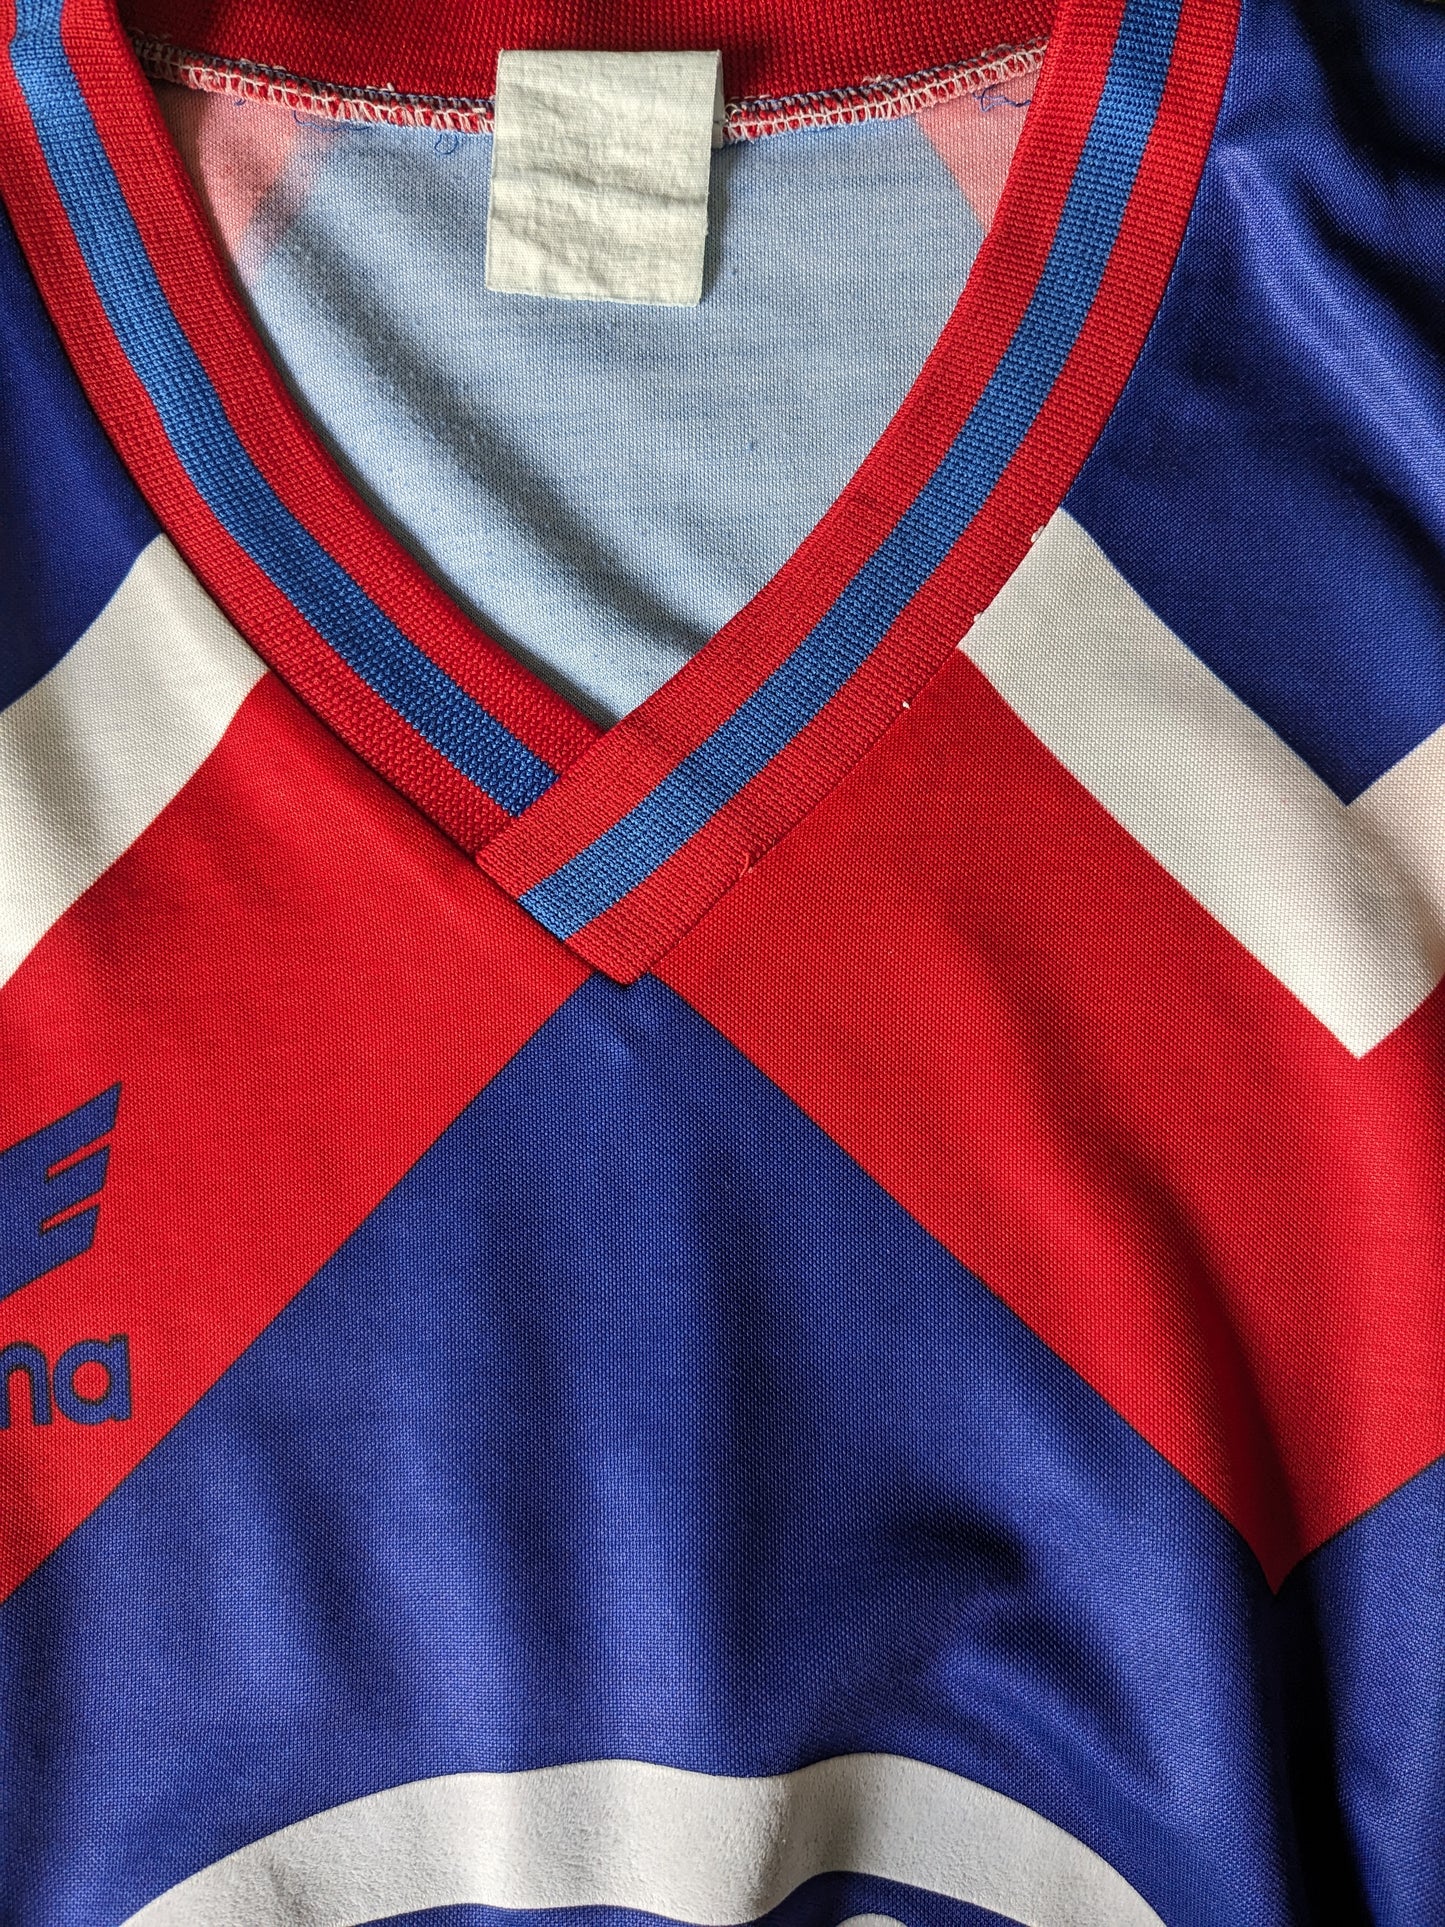 Chemise de sport Erima vintage avec col en V. Rouge bleu rouge couleur. Taille xl.